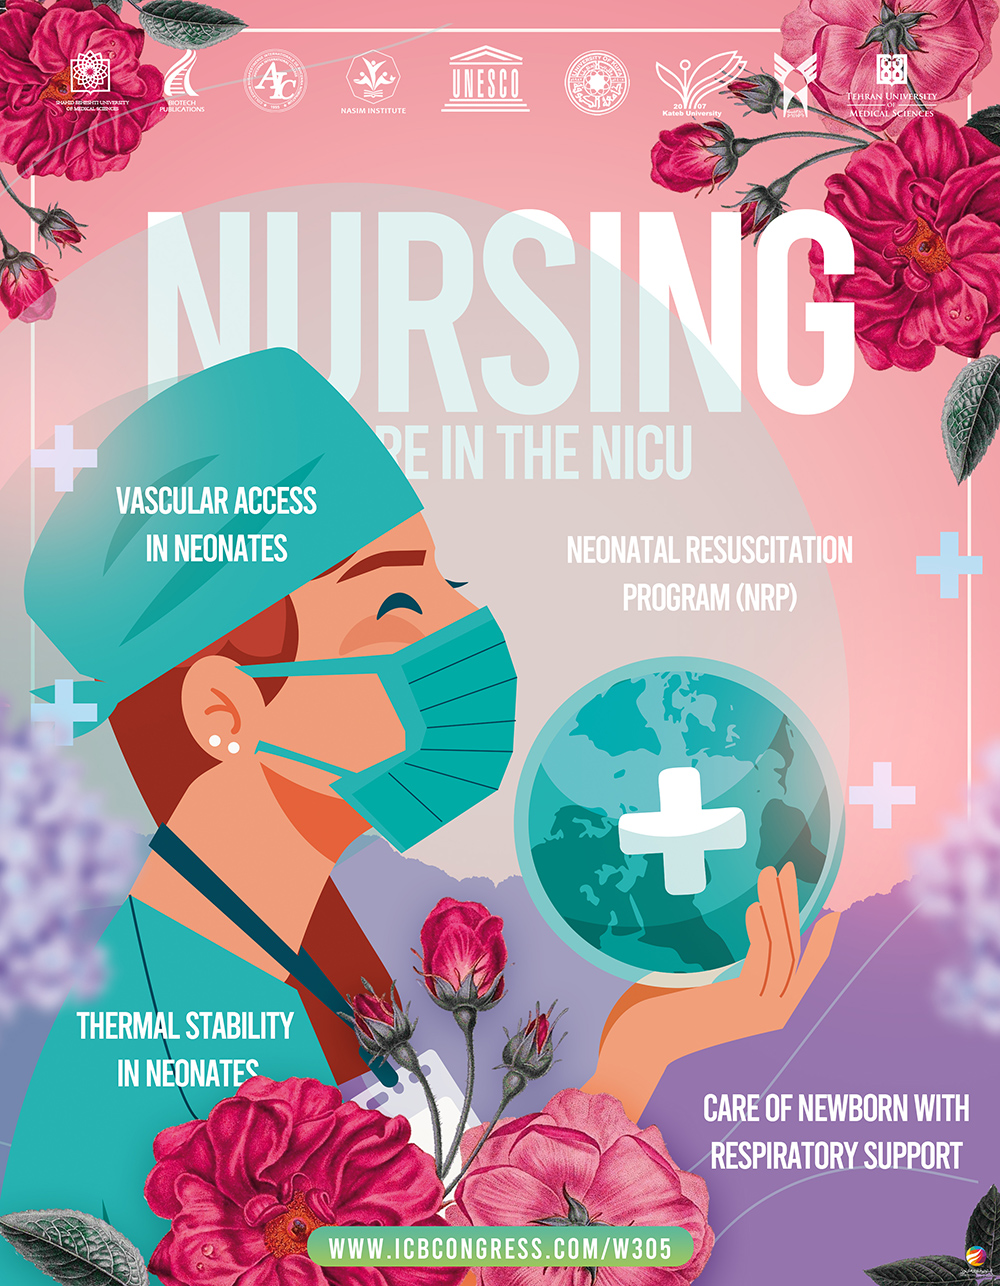 Nursing care in the NICU